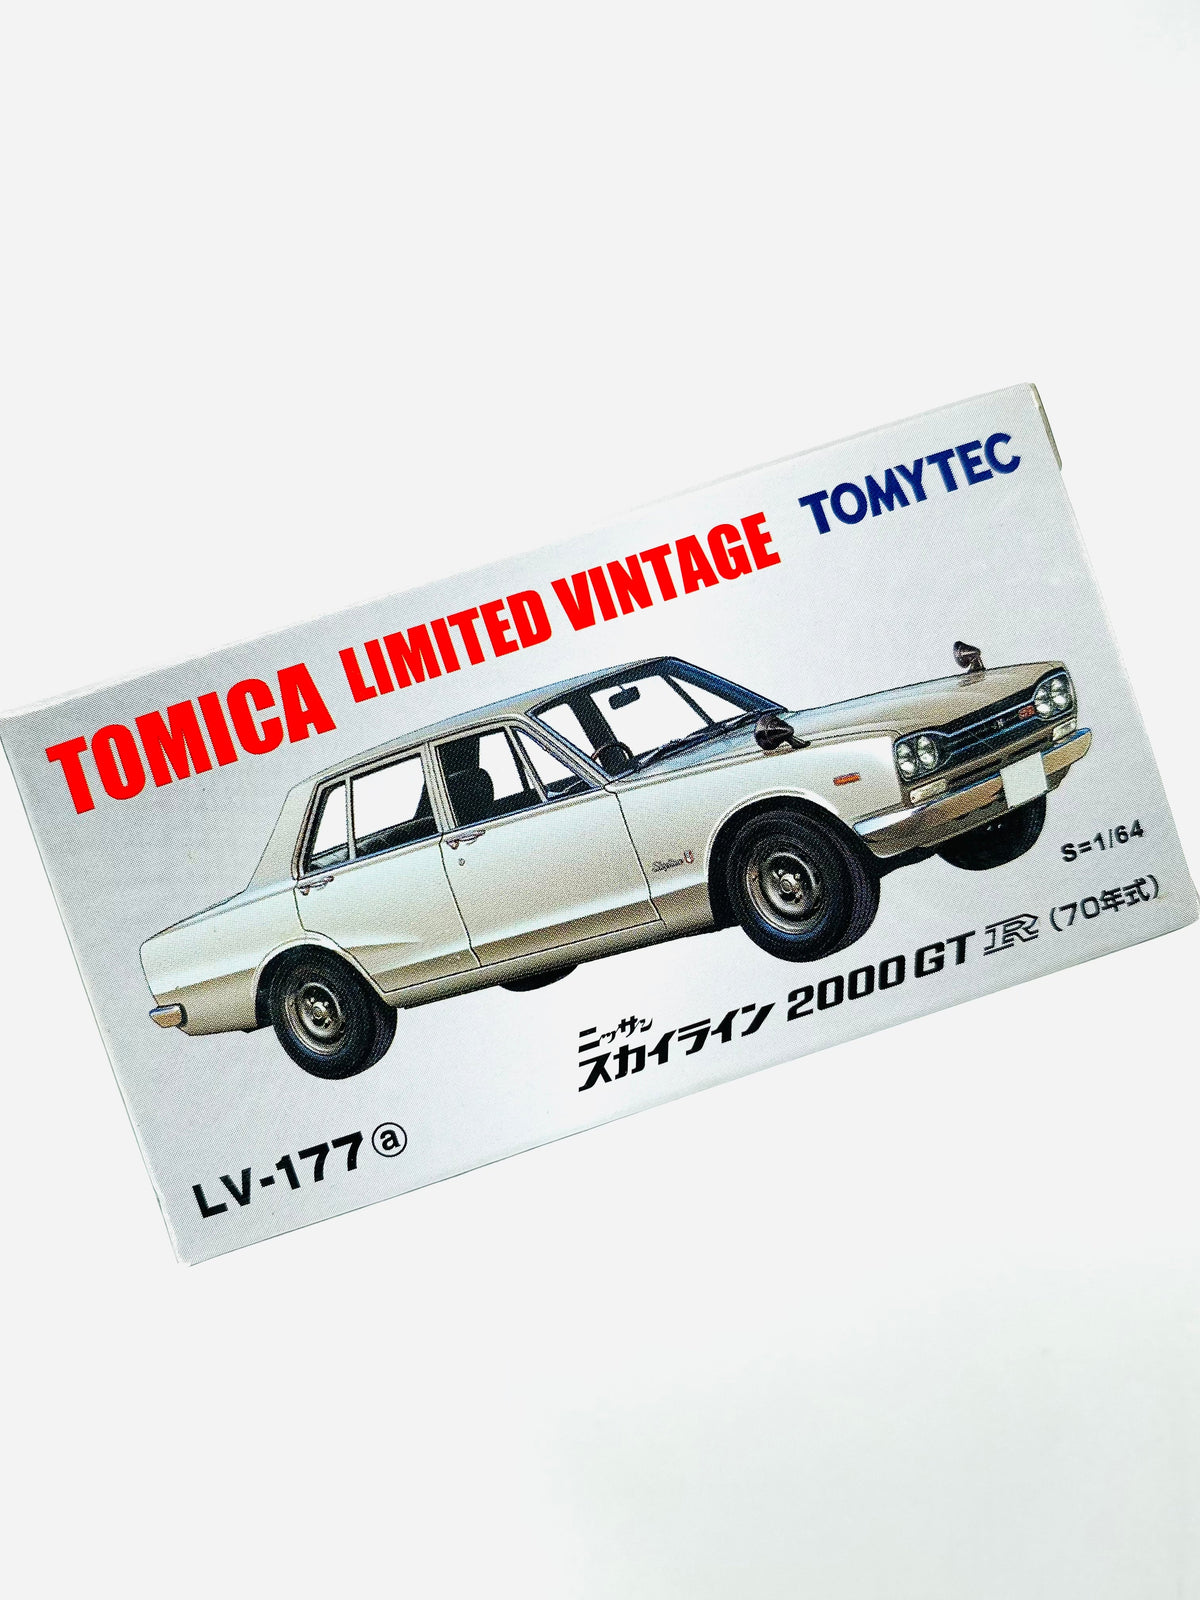 TOMICA LIMITED VINTAGE SKYLINE 2000 GTR 1970 TYPE SILVER LV-177